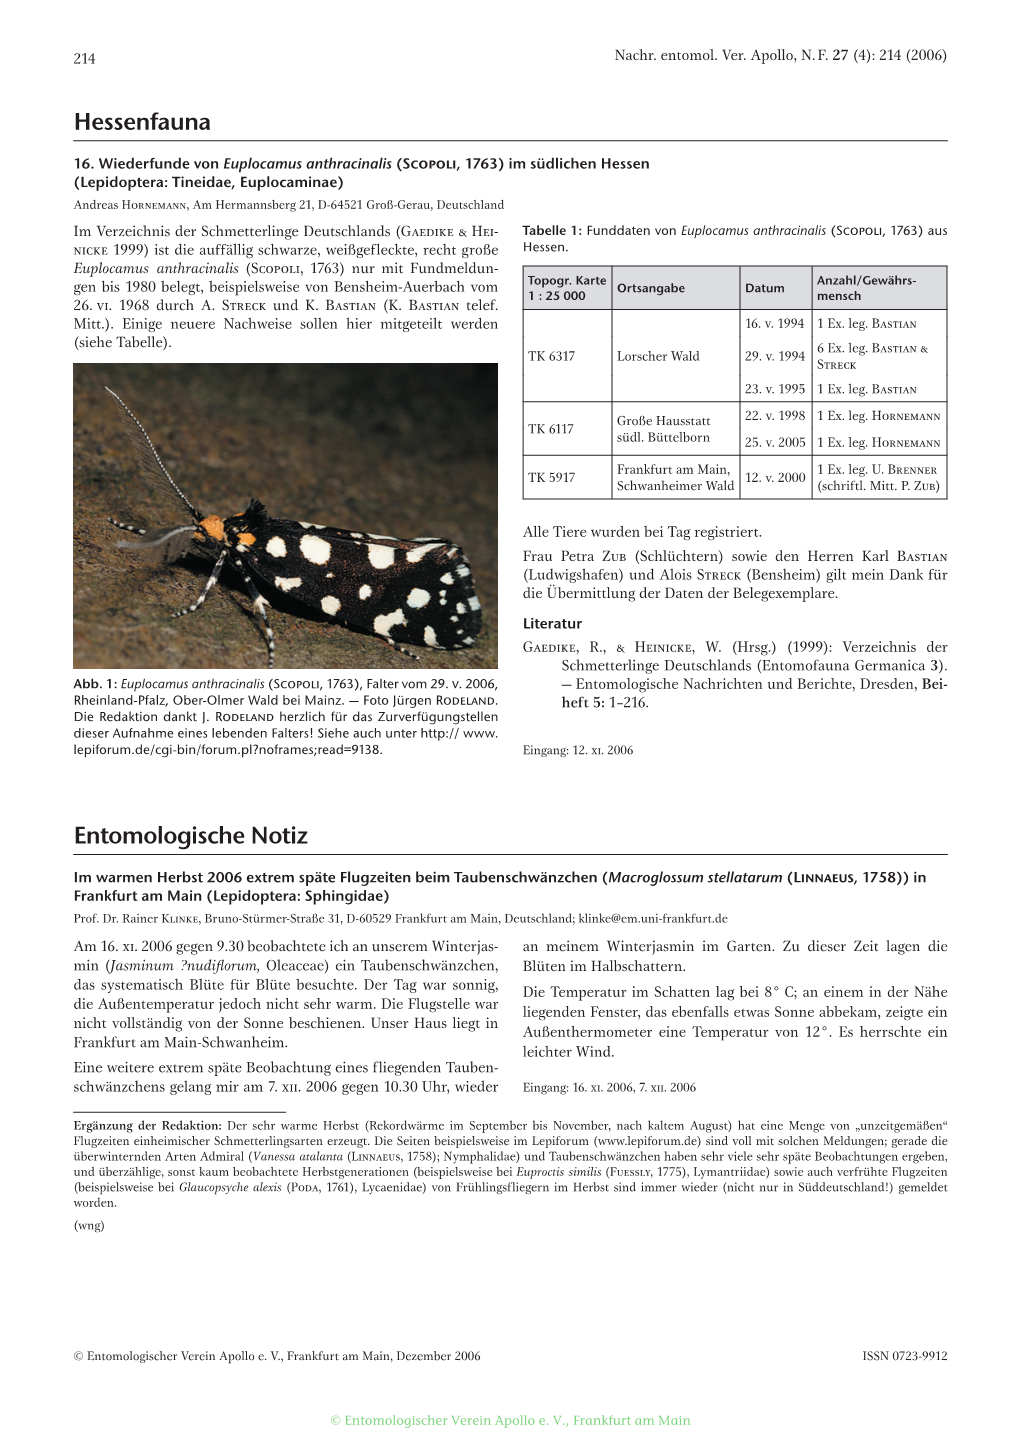 Entomologische Notiz Hessenfauna